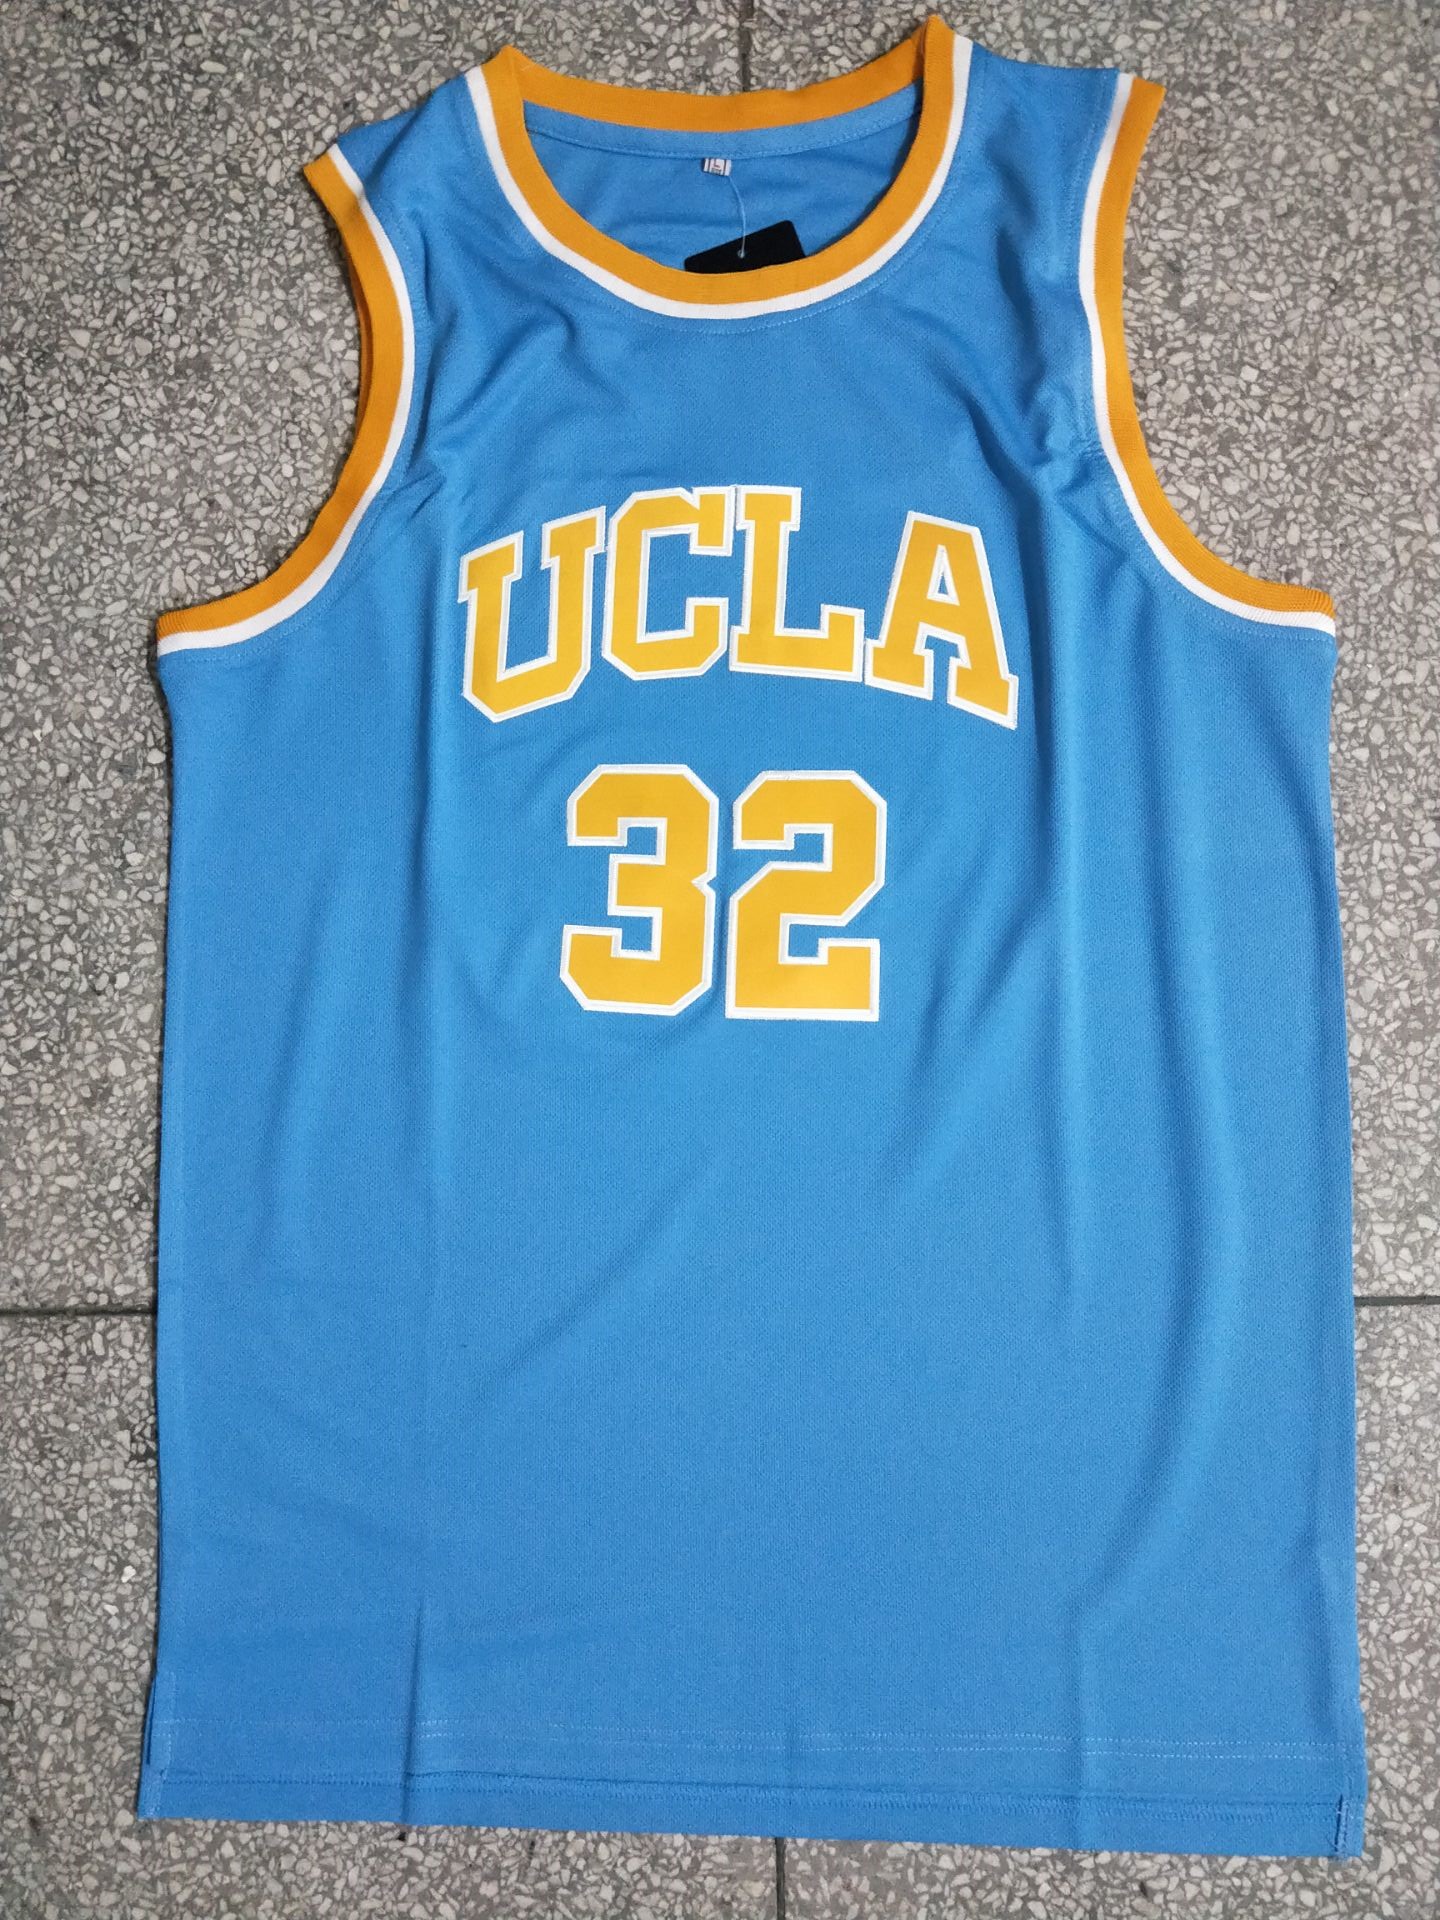 加利福尼亚大学洛杉矶分校比尔·沃尔顿32号蓝色刺绣篮球背心球衣